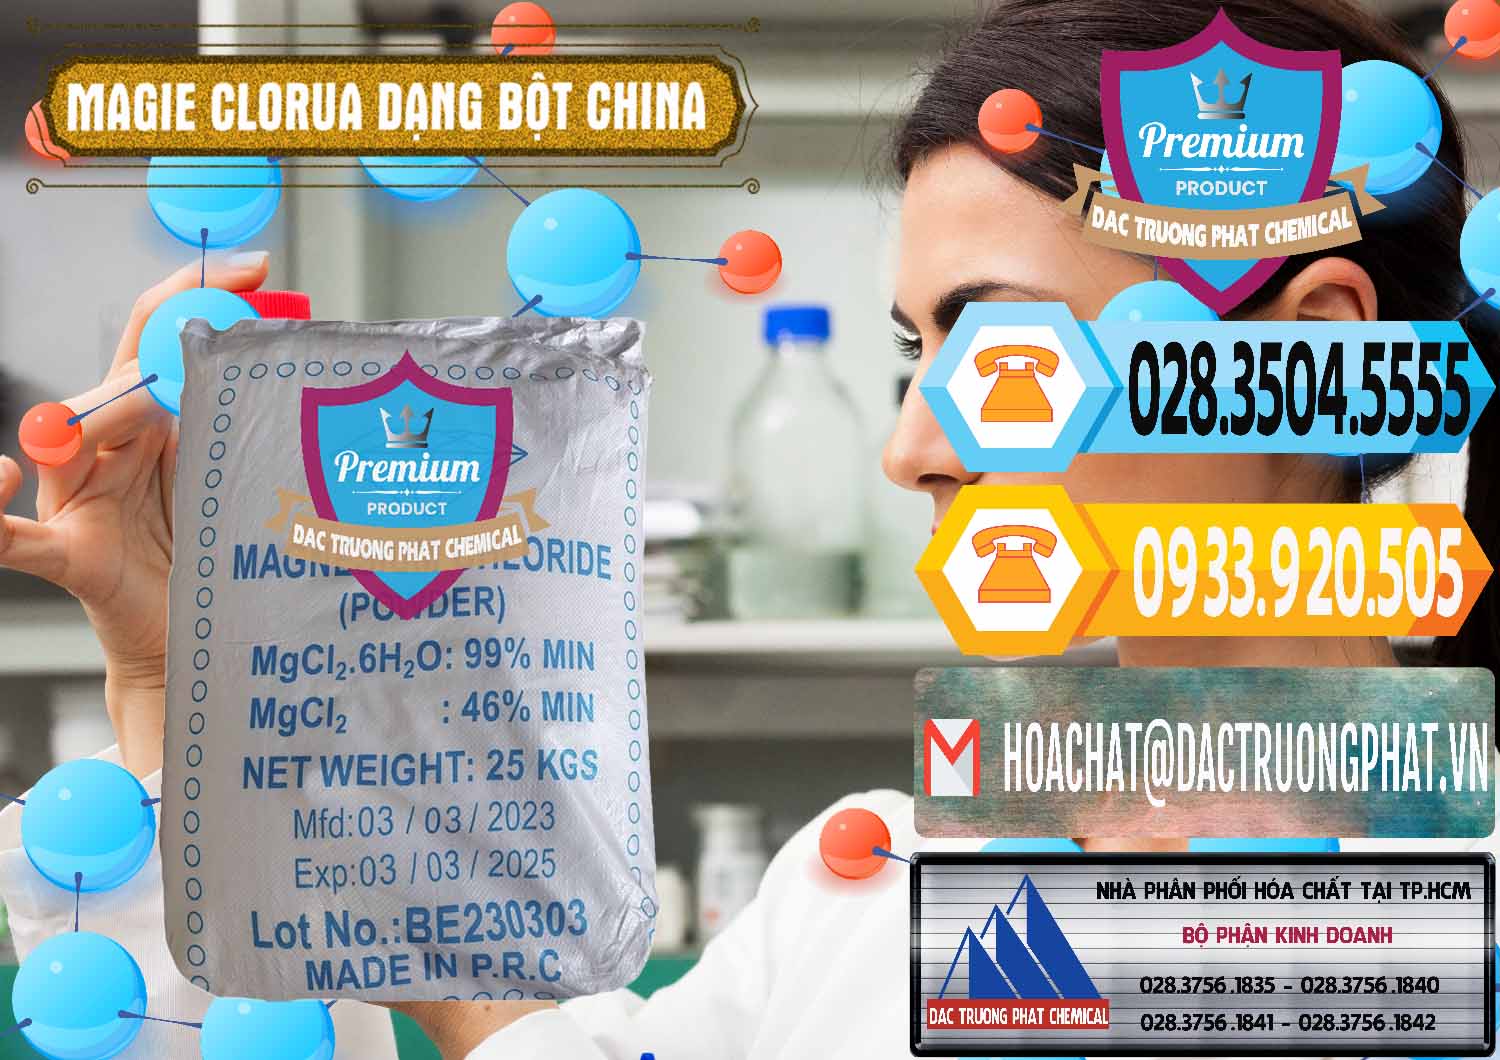 Công ty chuyên cung cấp ( bán ) Magie Clorua – MGCL2 96% Dạng Bột Logo Kim Cương Trung Quốc China - 0387 - Công ty chuyên phân phối ( cung ứng ) hóa chất tại TP.HCM - hoachattayrua.net